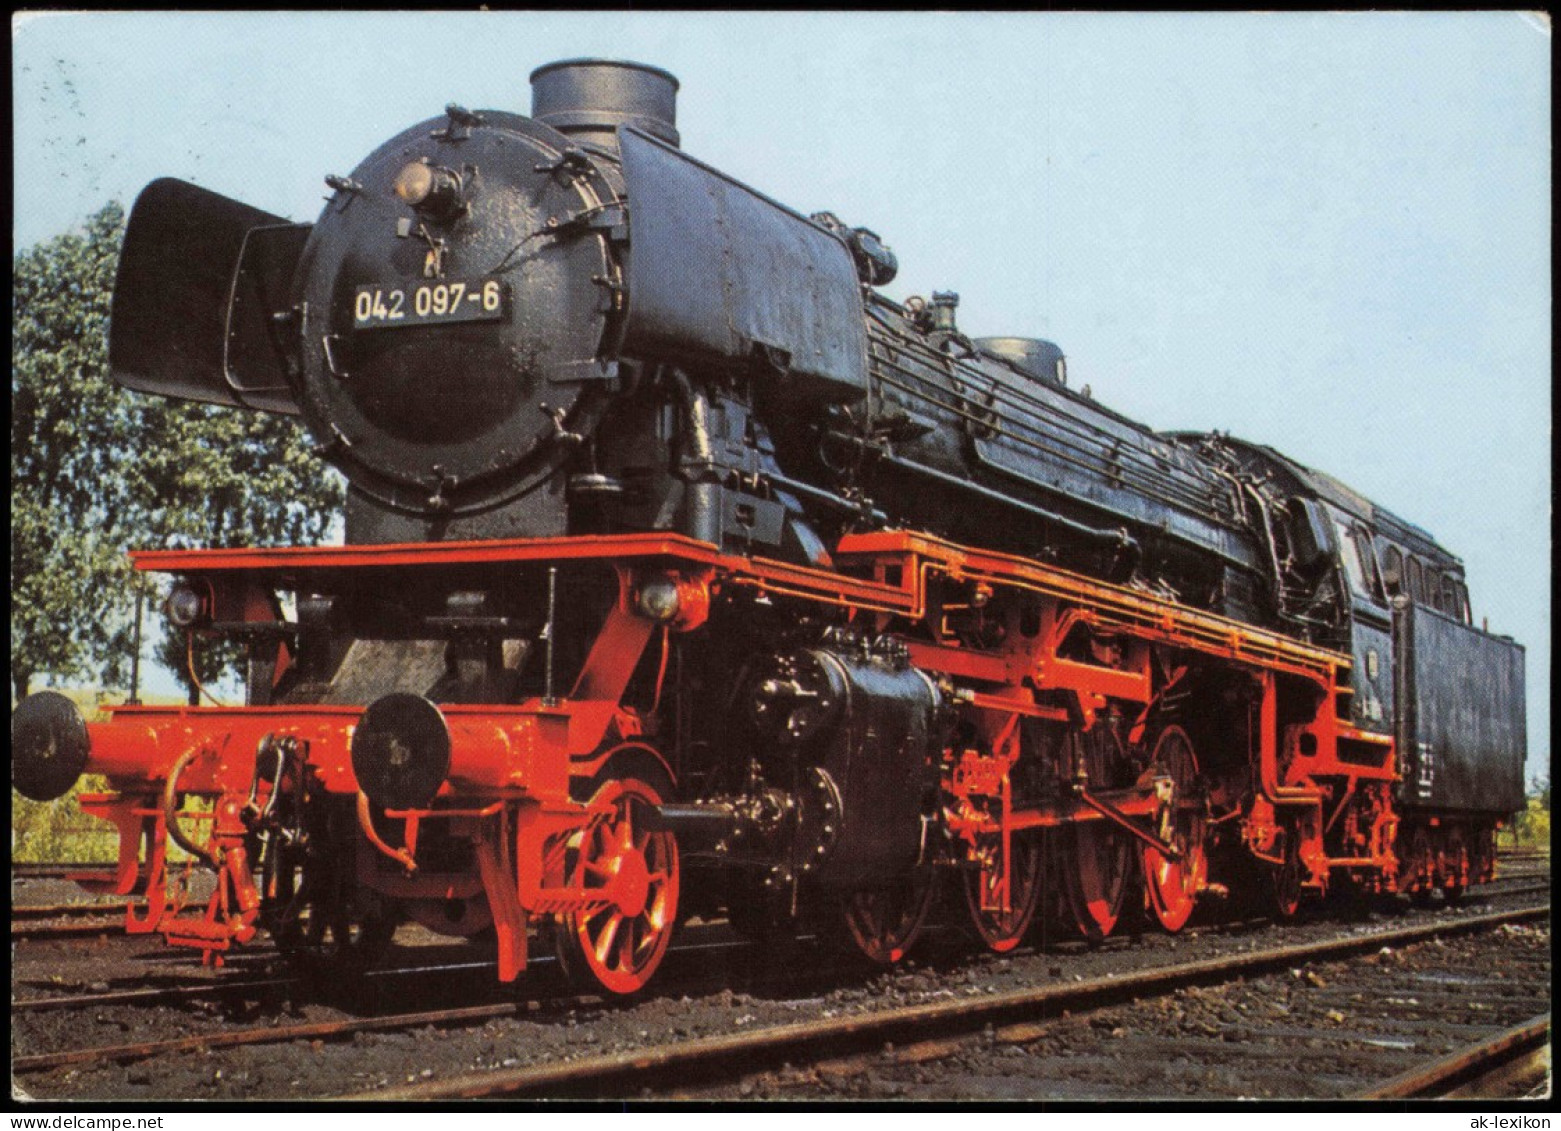 Eisenbahn Dampflokomotive Baureihe 042 Güterzuglokomotive Mit Ölfeuerung 1975 - Trains